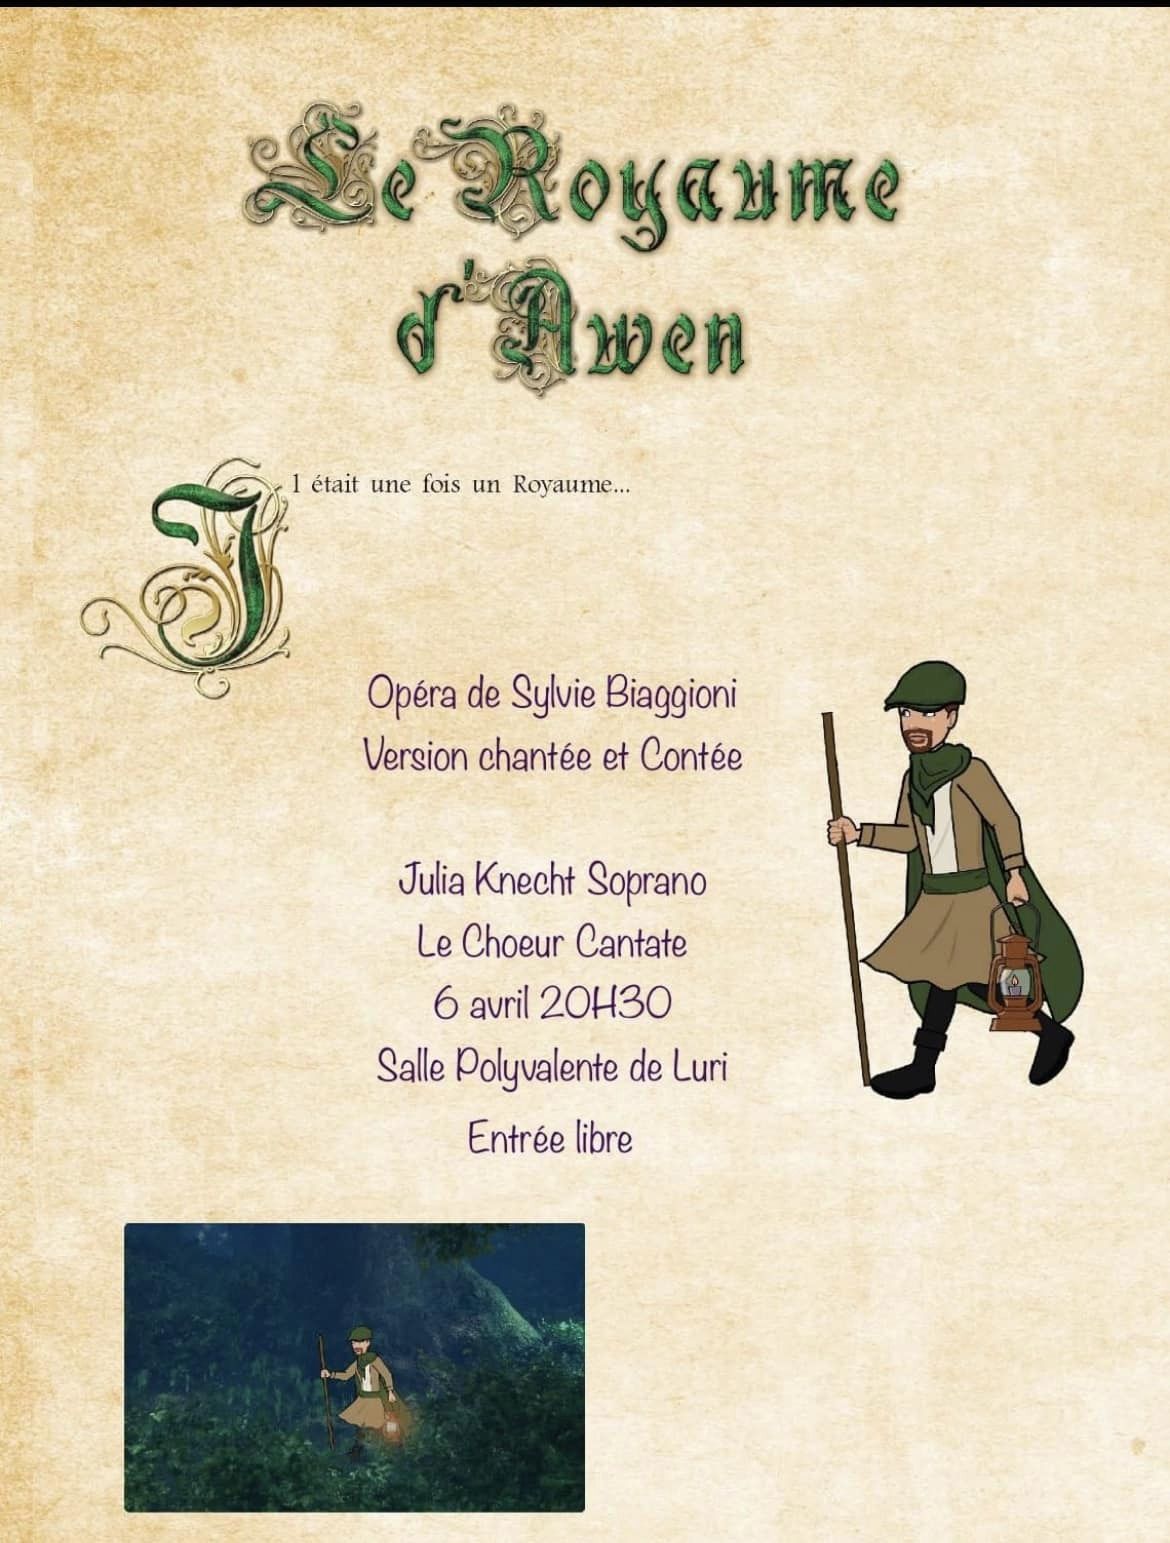 Luri : Une première de l’opéra « Le Royaume d’Awen »